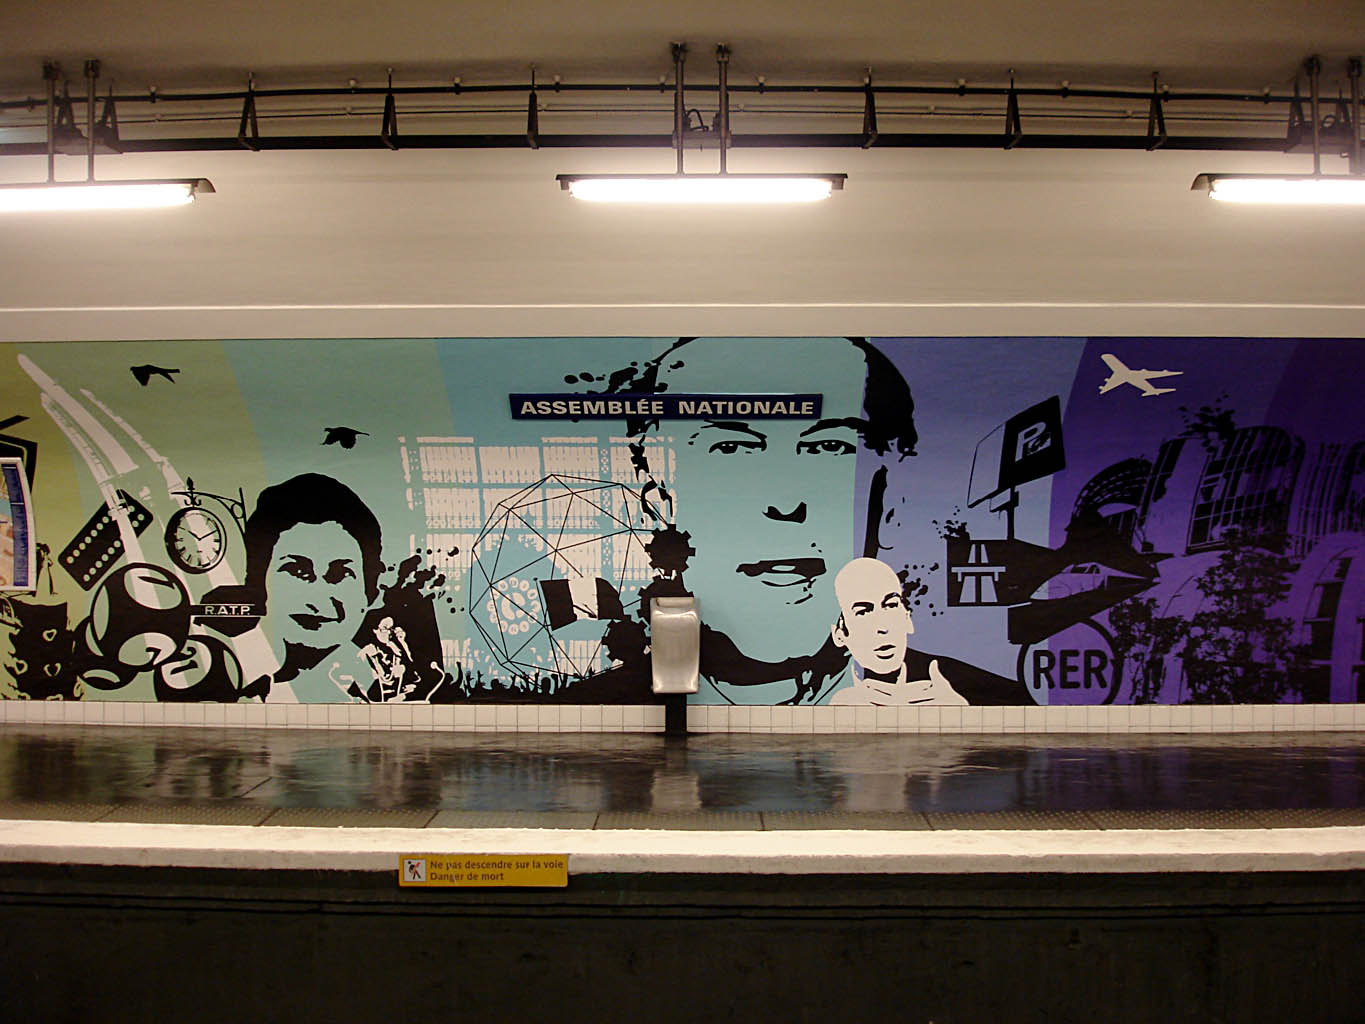 Metro de Paris - Ligne 12 - Assemblee Nationale 05.jpg